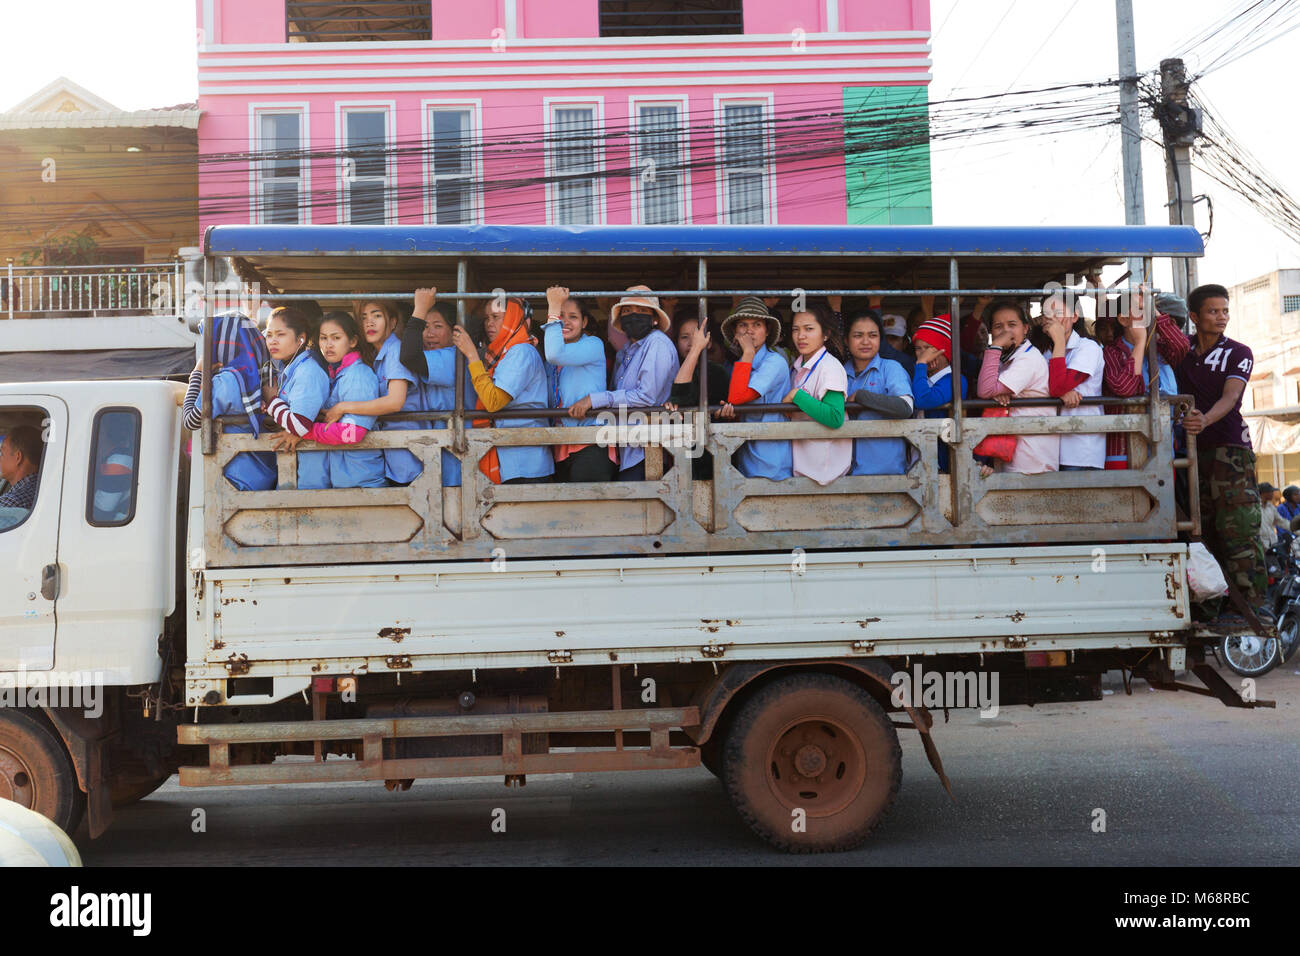 Les travailleuses d'une usine locale d'être transféré de nouveau à leur village par camion, Kampot, Cambodge Asie Banque D'Images